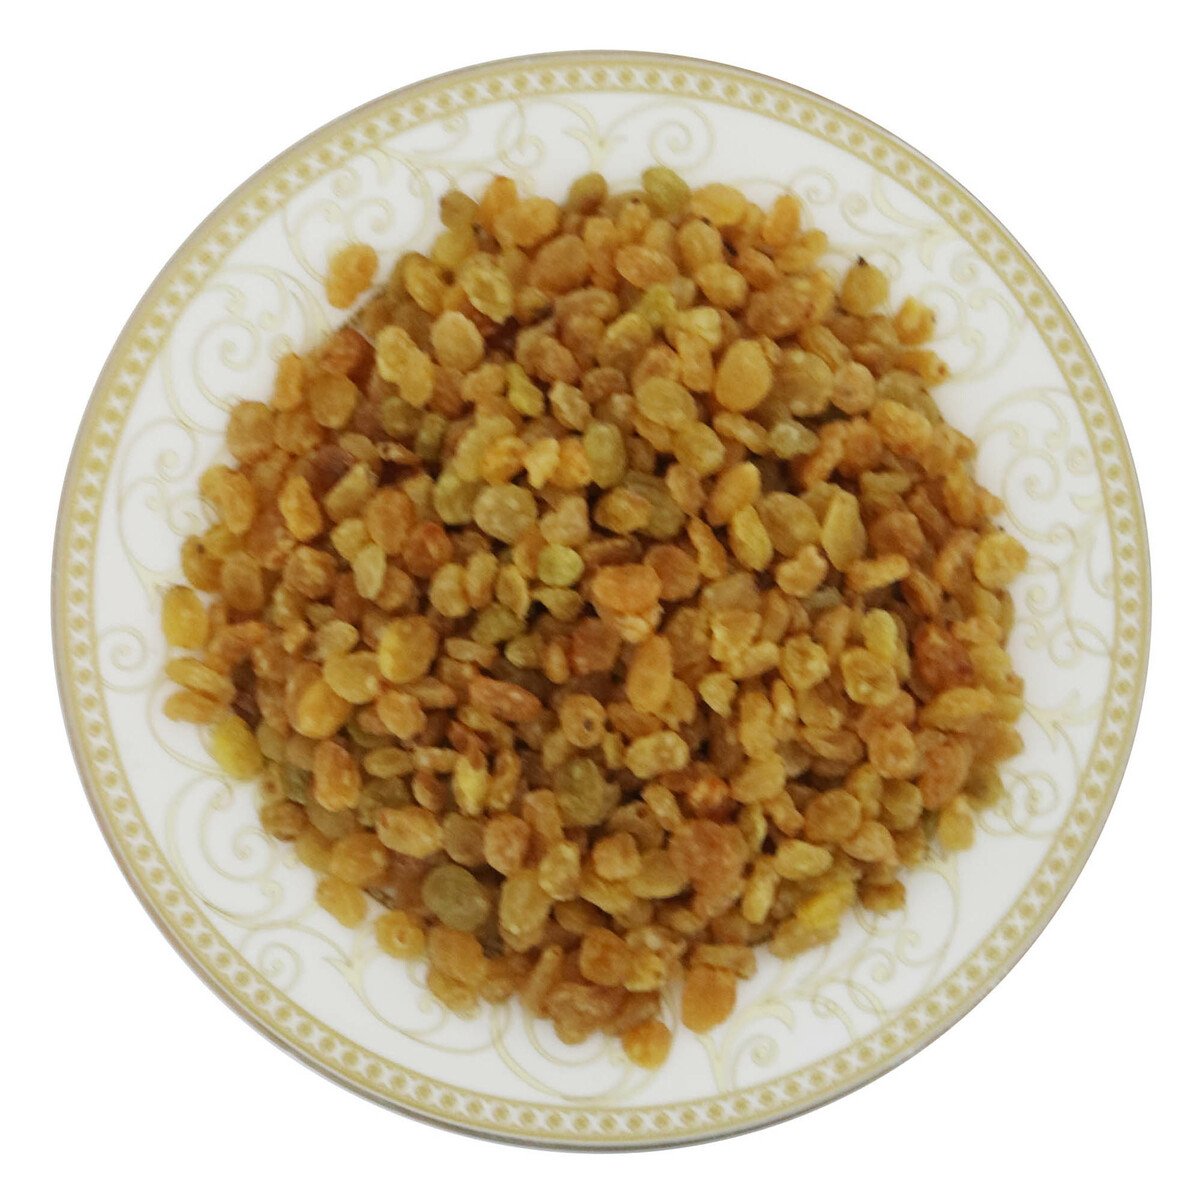 Lulu Iranian Raisins 250g Approx Weight